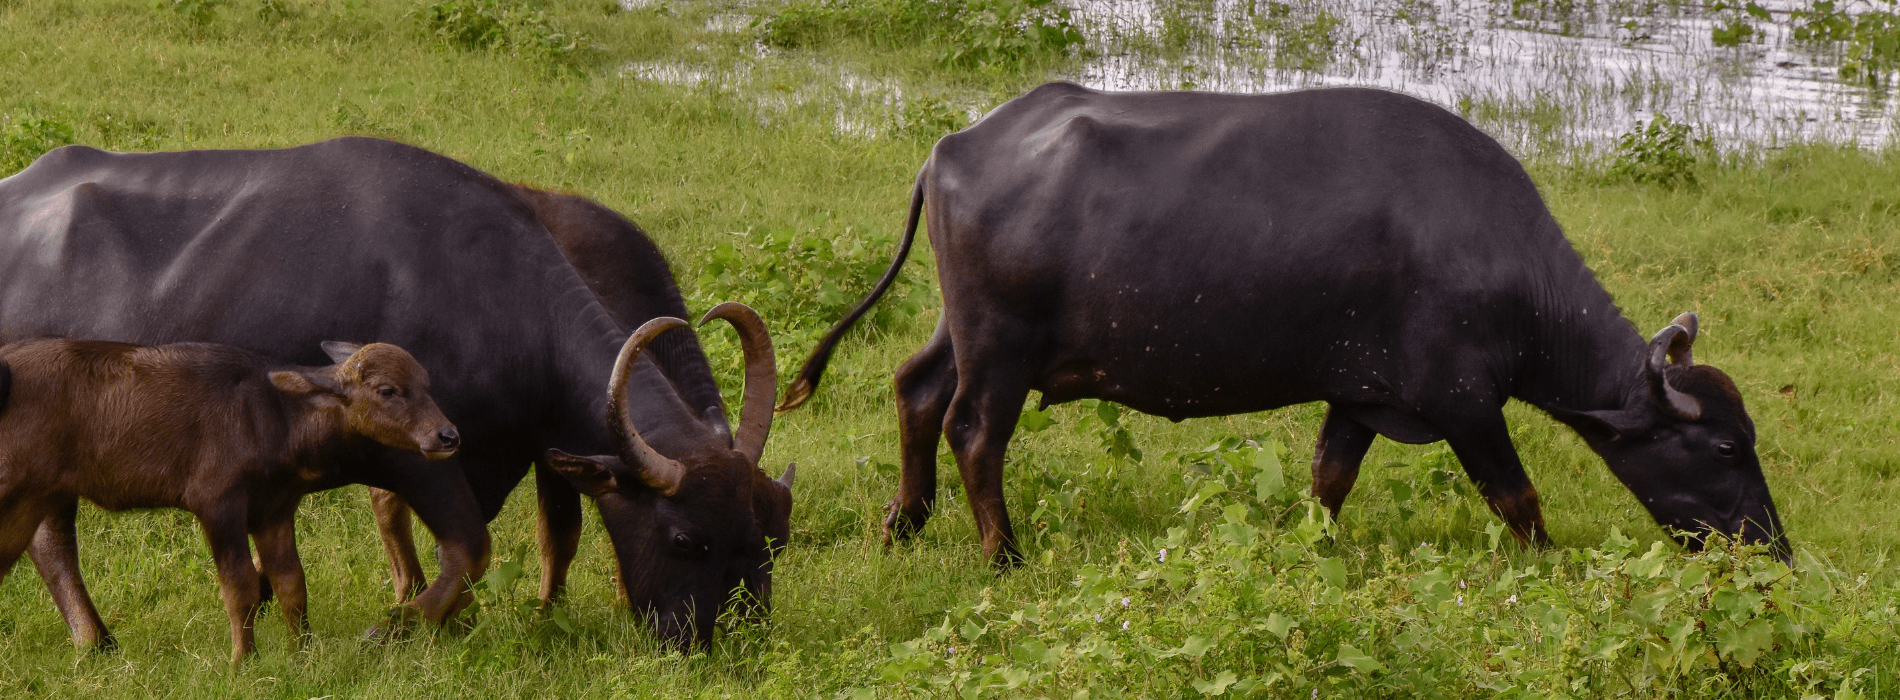 Cows grazing in field in Laos